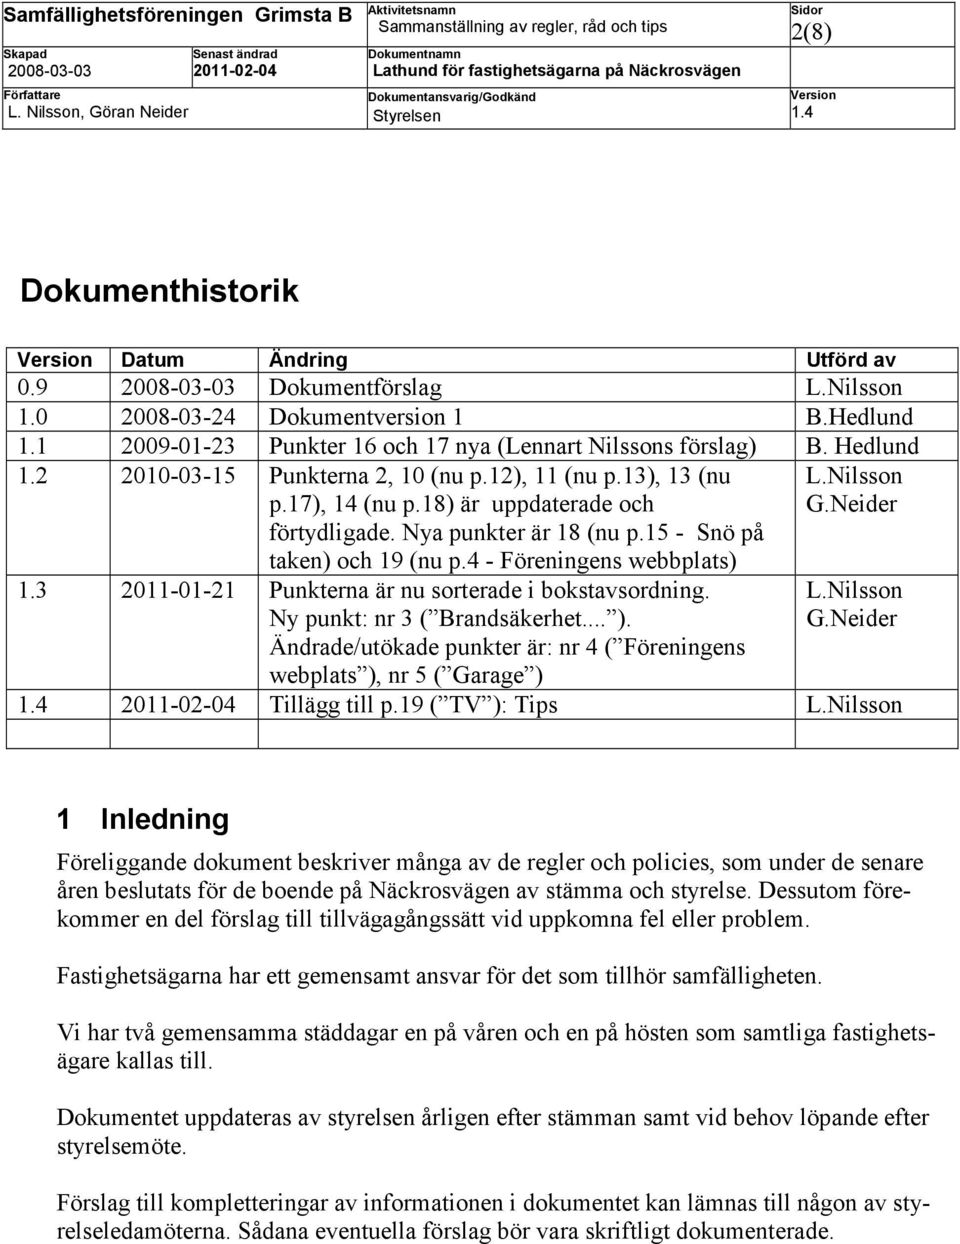 3 2011-01-21 Punkterna är nu sorterade i bokstavsordning. Ny punkt: nr 3 ( Brandsäkerhet... ). Ändrade/utökade punkter är: nr 4 ( Föreningens webplats ), nr 5 ( Garage ) L.Nilsson G.Neider L.